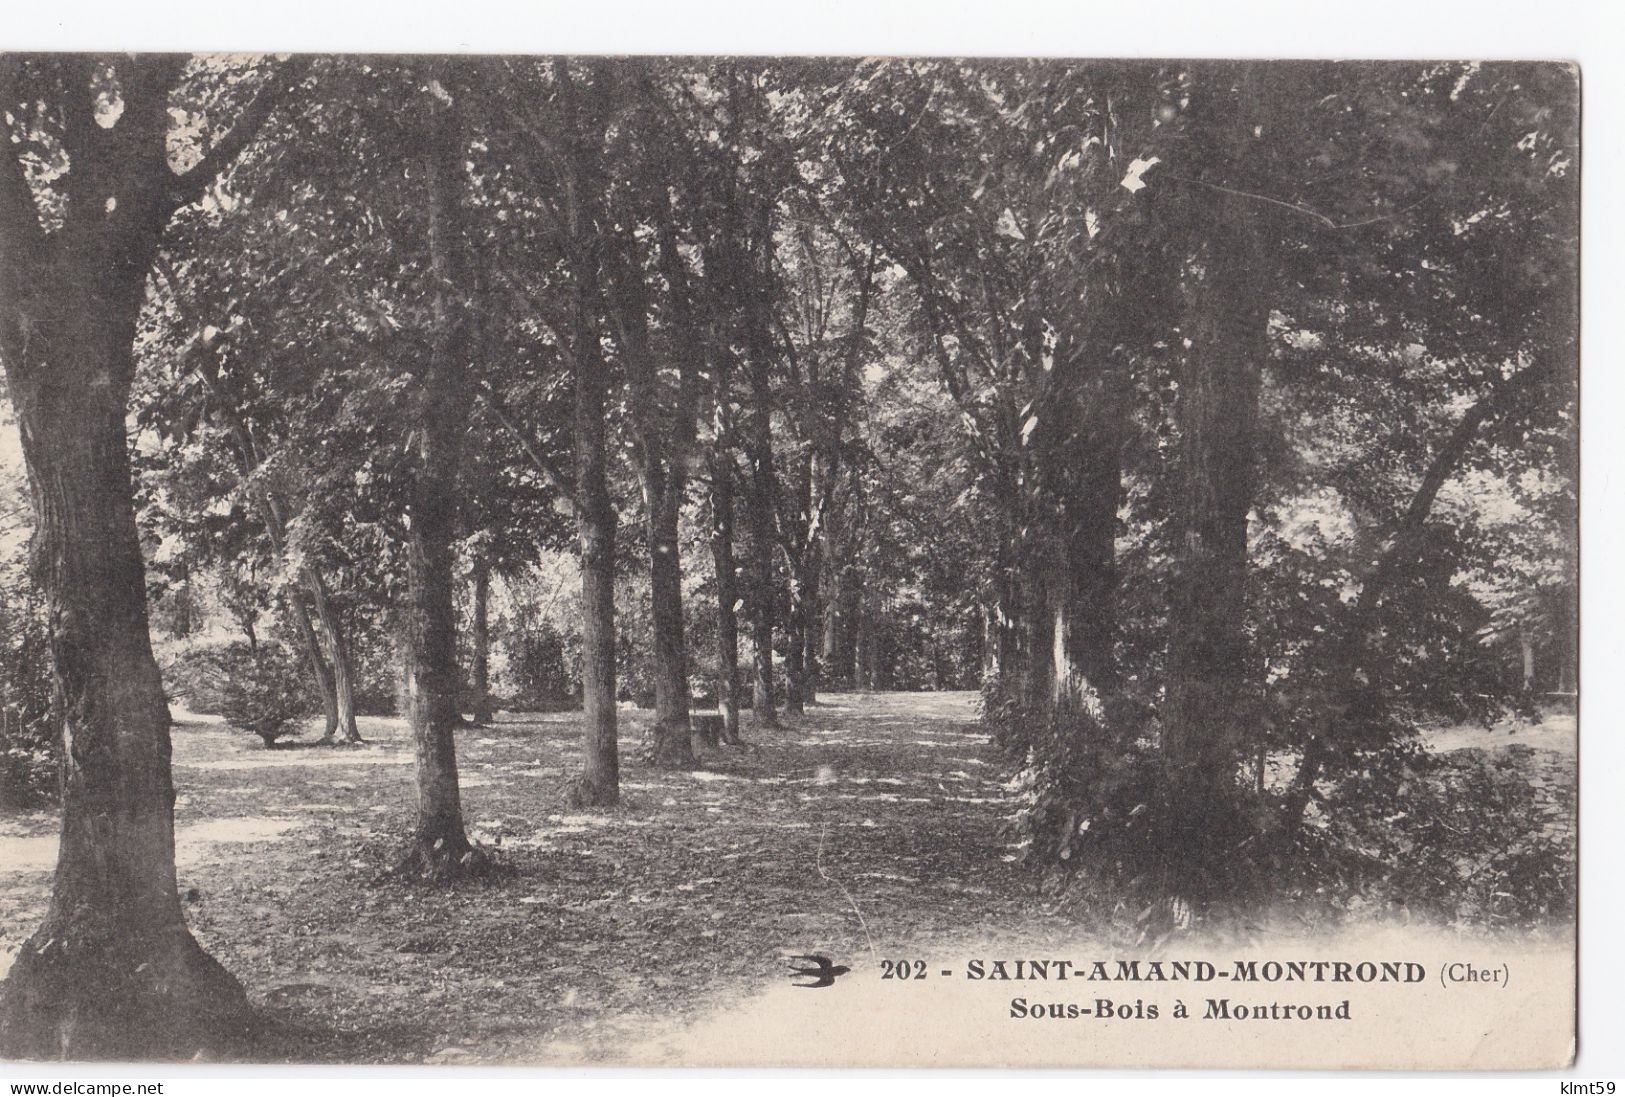 Saint-Amand-Montrond - Sous-Bois à Montrond - Saint-Amand-Montrond